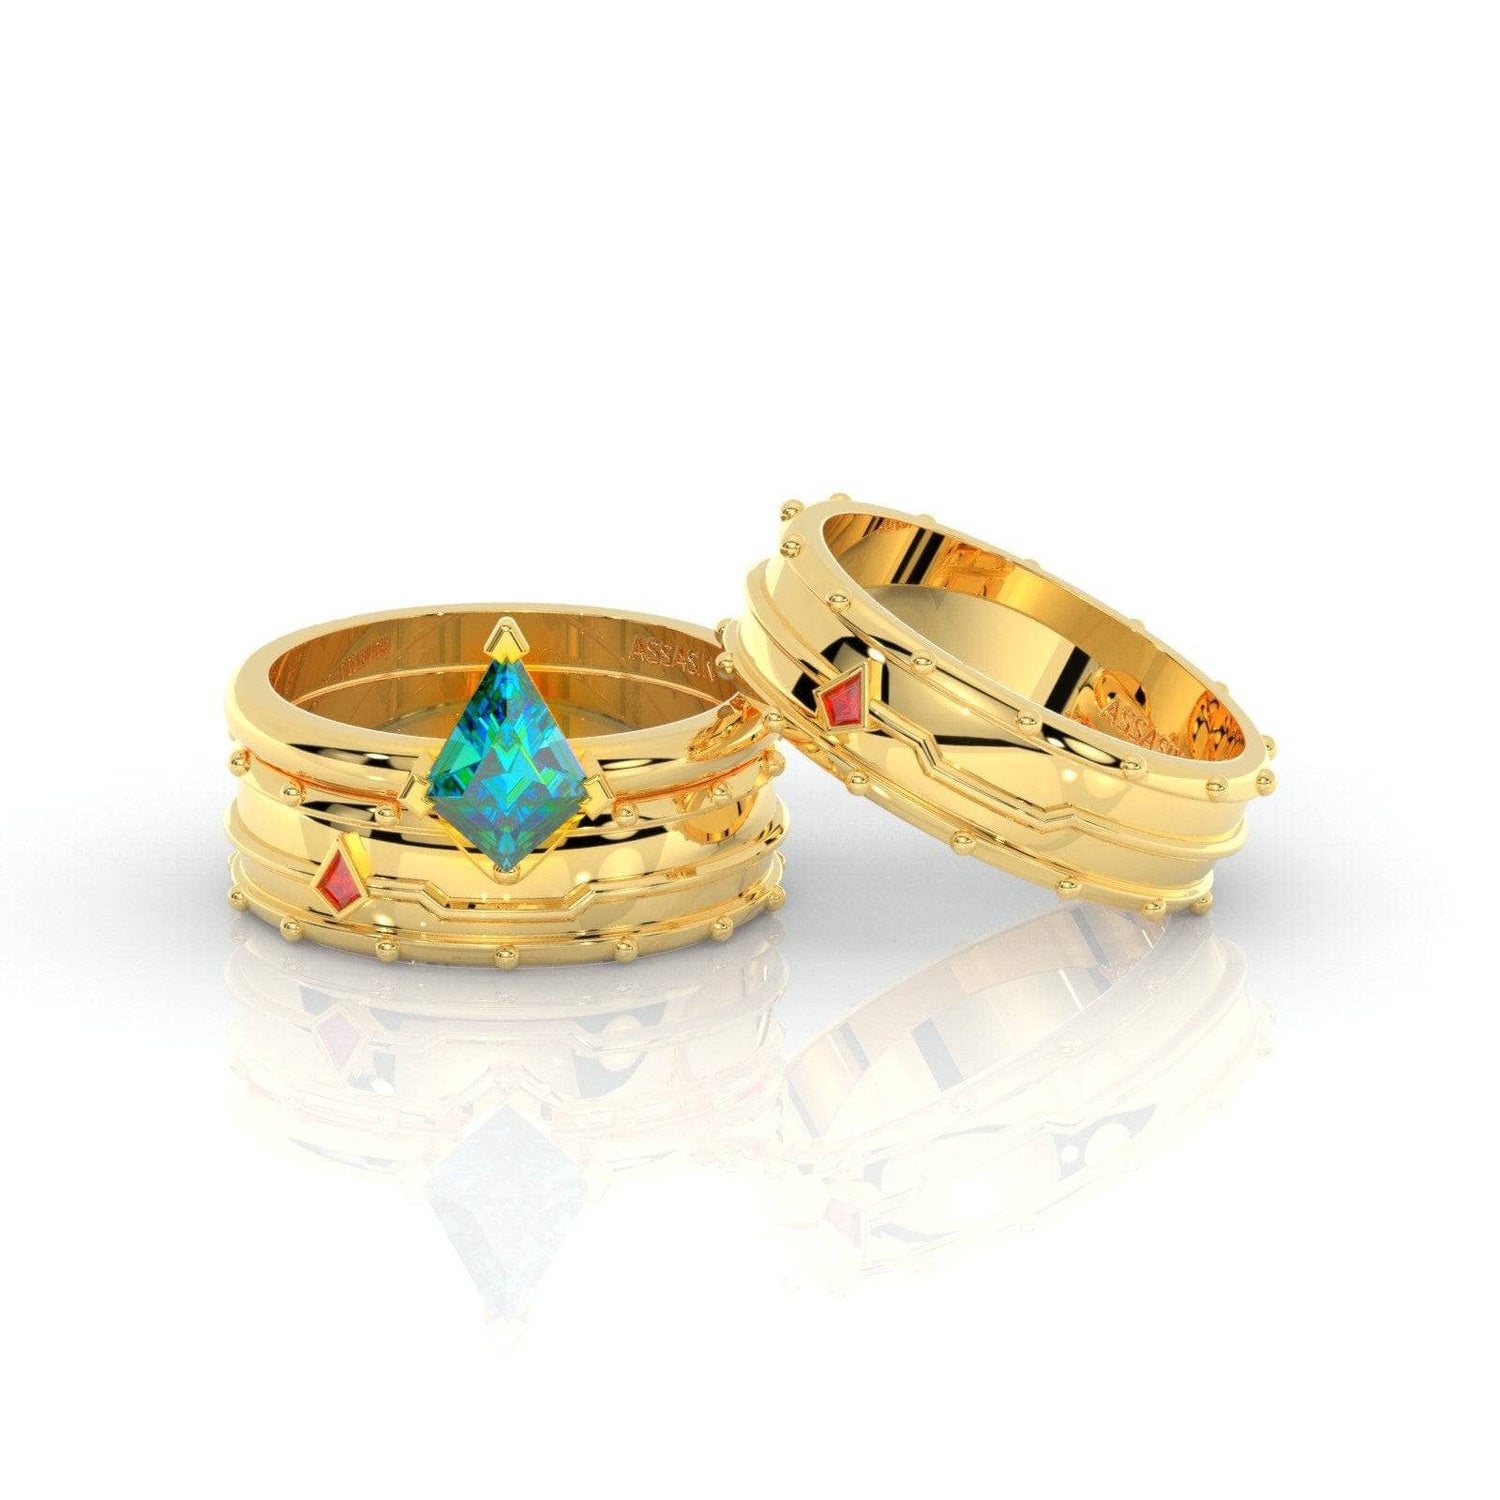 Assasin's Promise Ring Set (Women)- 14k Yellow Gold Video Game Inspired Rings - Black Diamonds New York